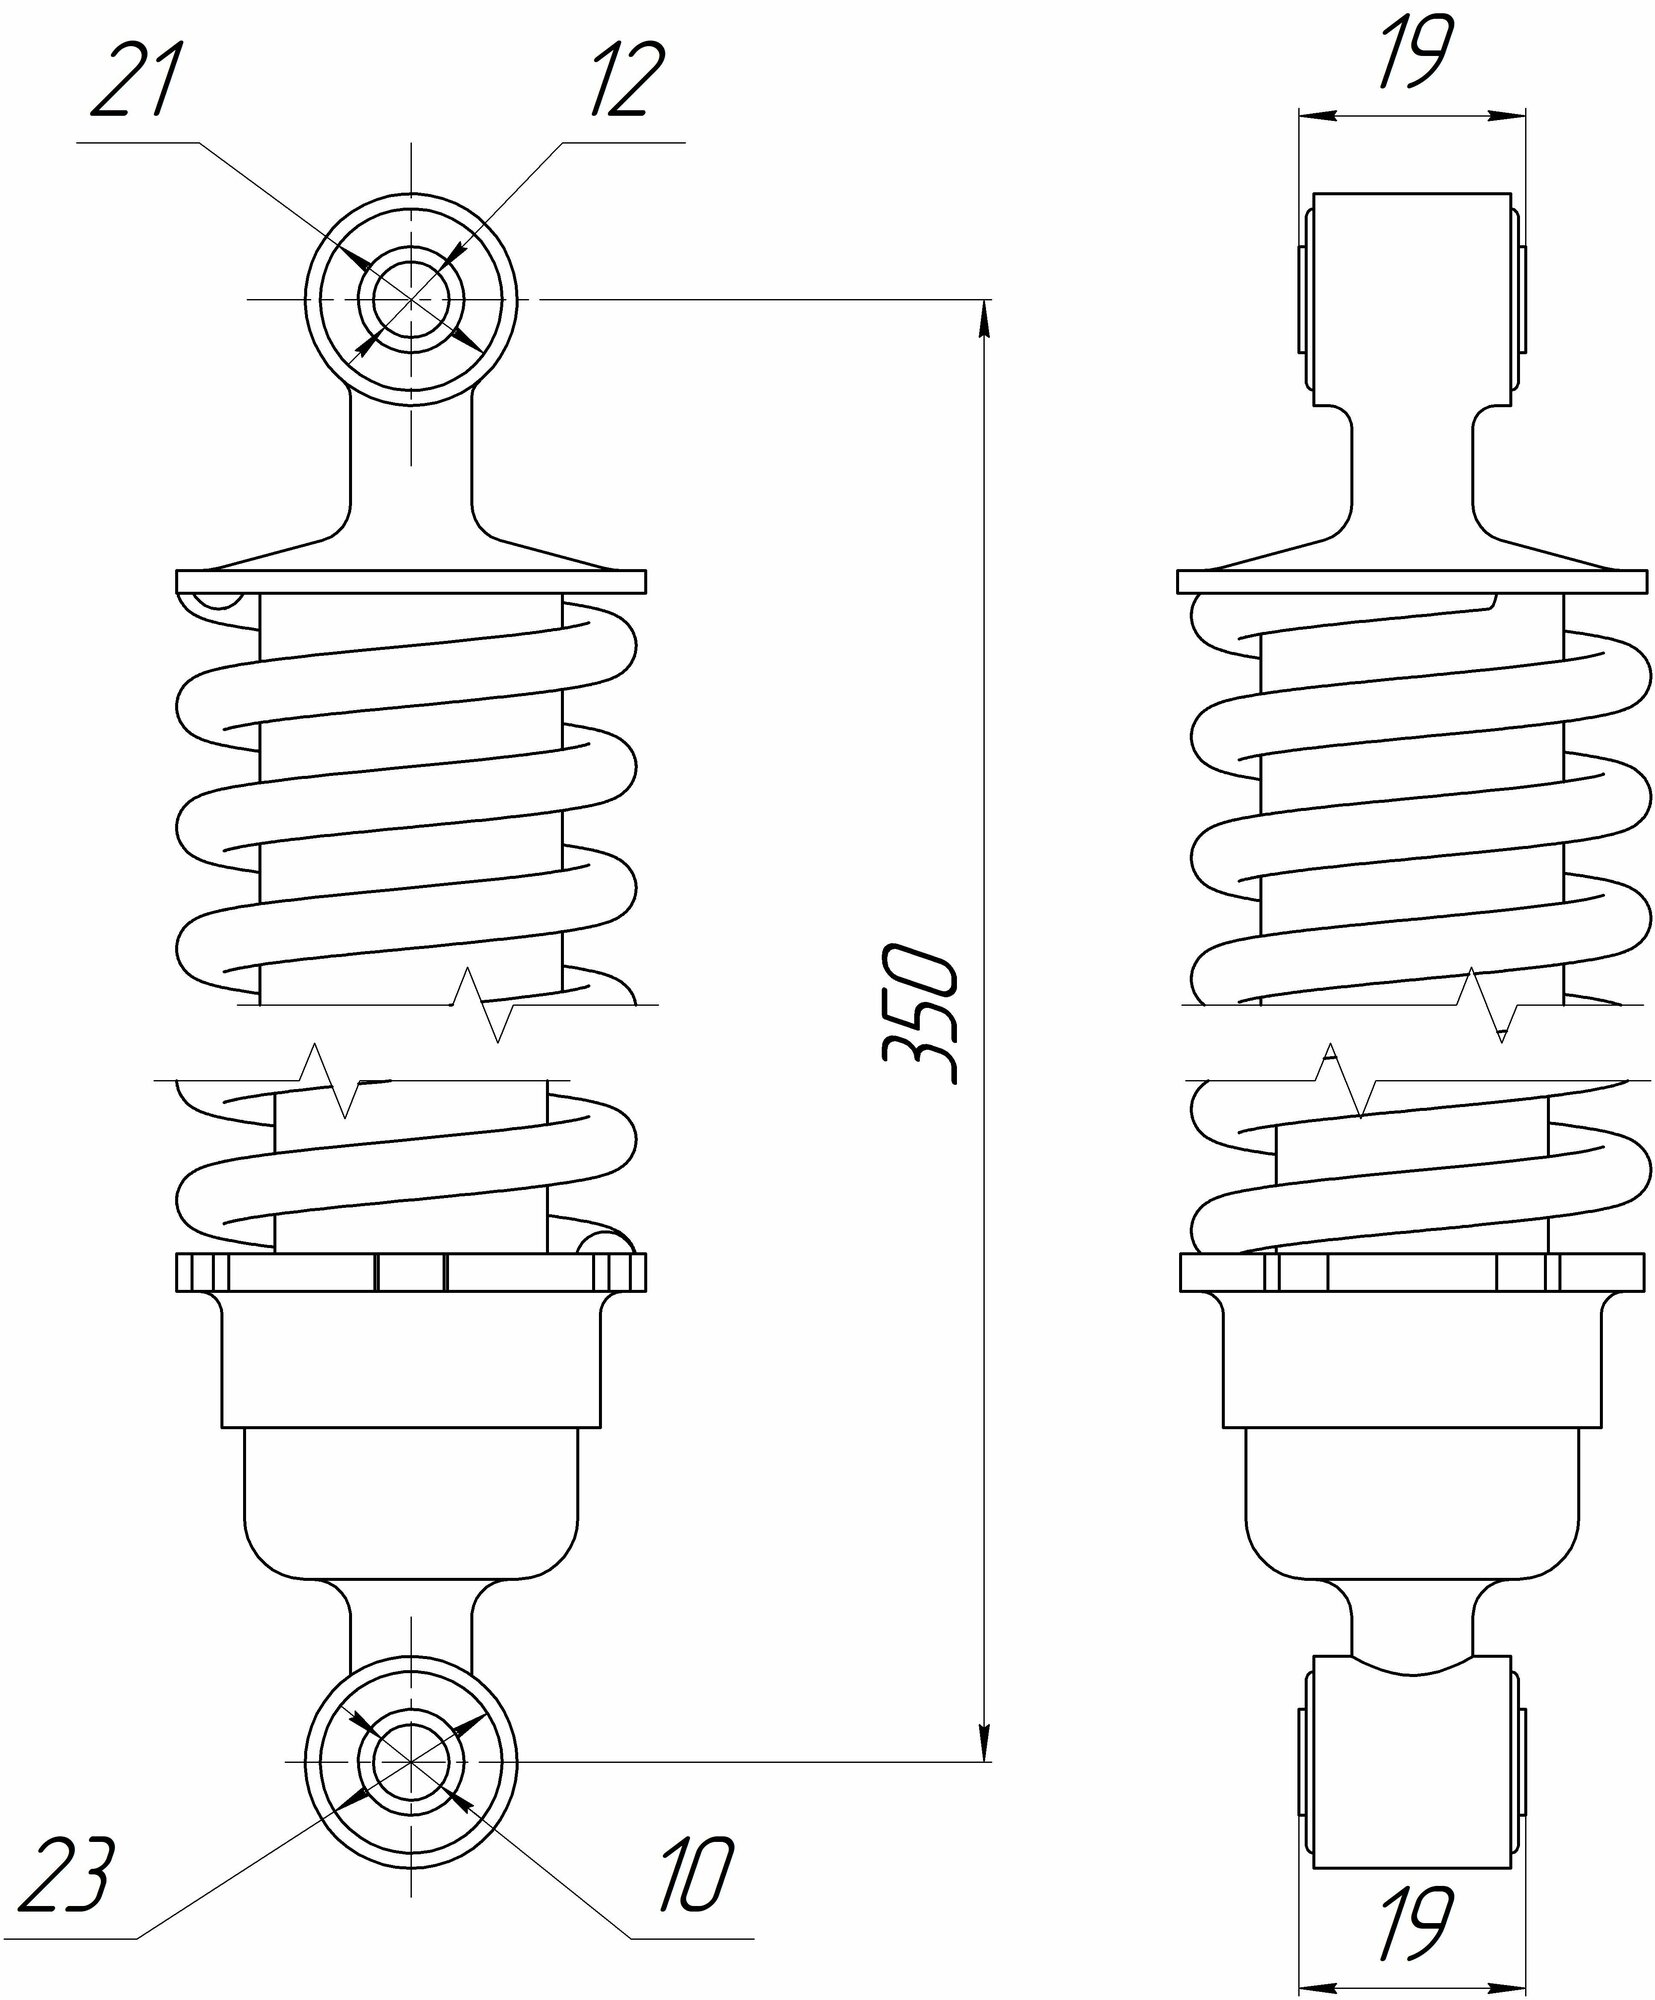 Амортизатор Альфа, Zodiak задний хром (L-340mm, D-12mm, d-10mm) стандарт (длинный стакан)